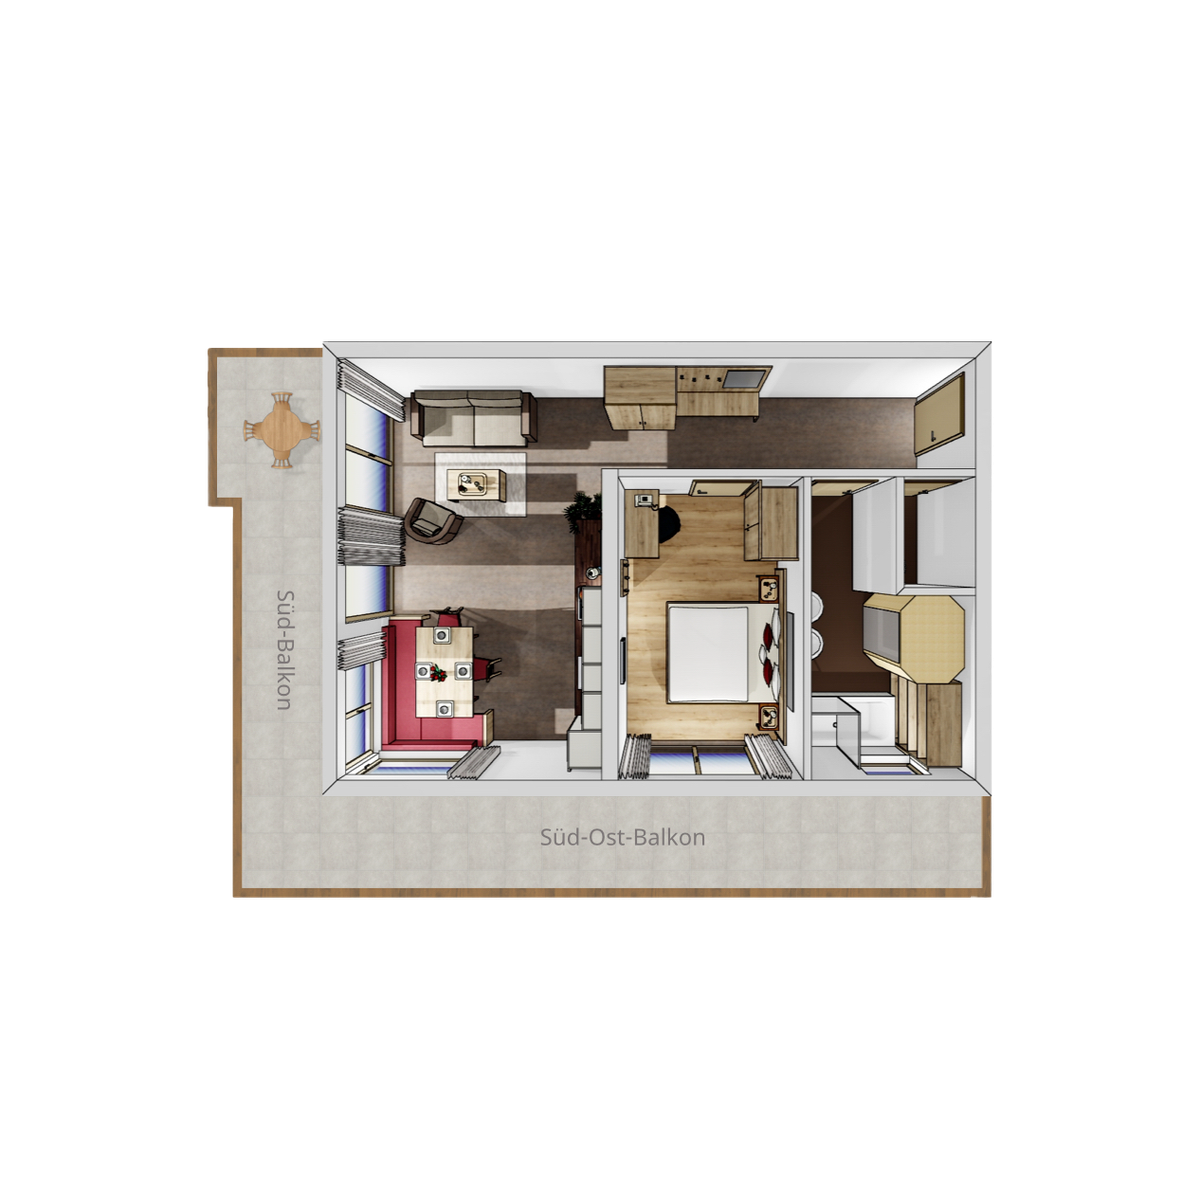 Apartment mit 1 Schlafzimmer-plan